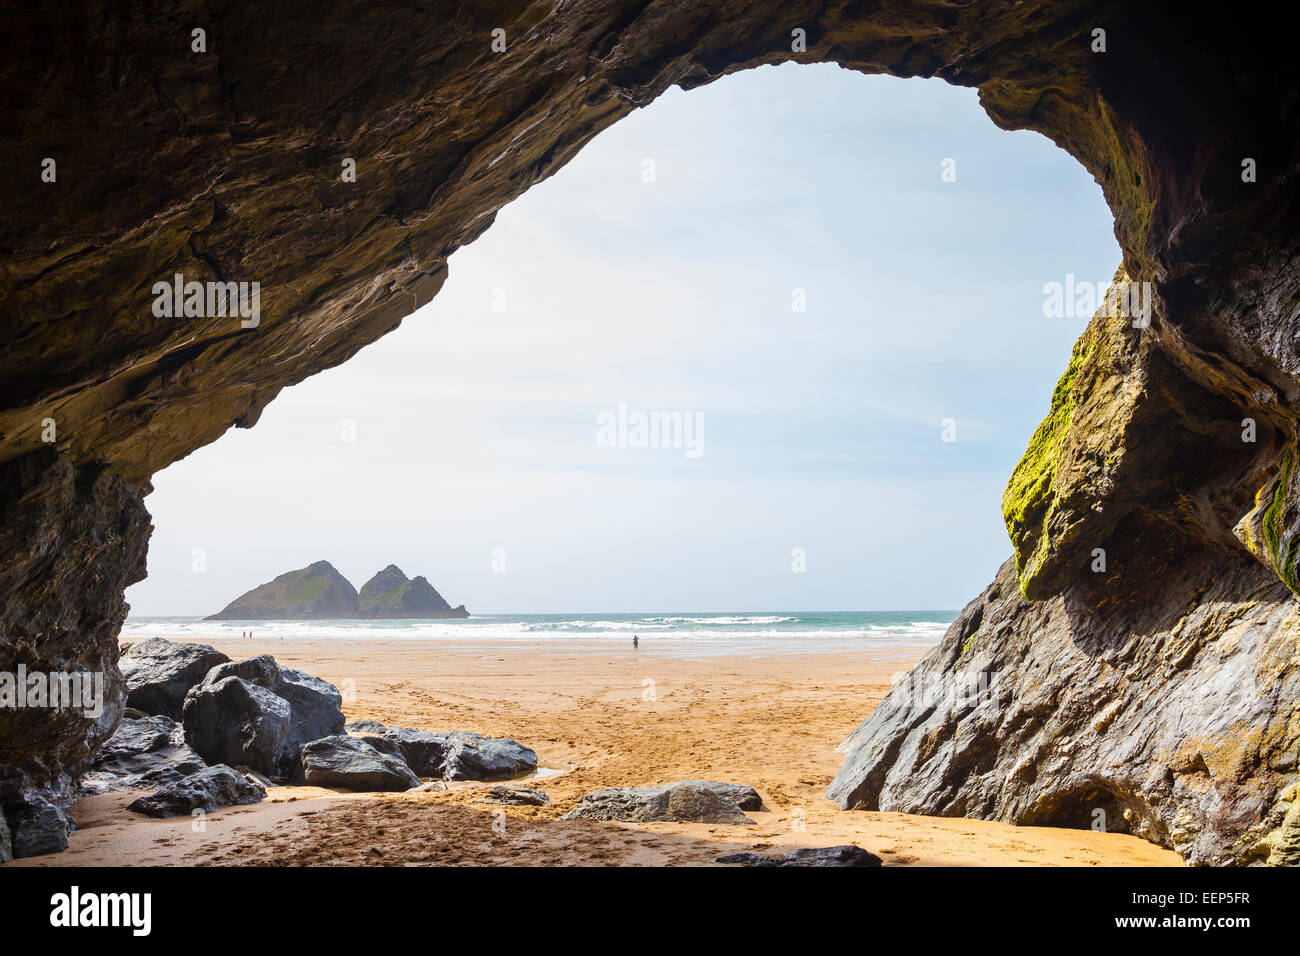 Grande caverna sulla spiaggia di sabbia dorata a Holywell Bay Cornwall Inghilterra UK Europa Foto Stock